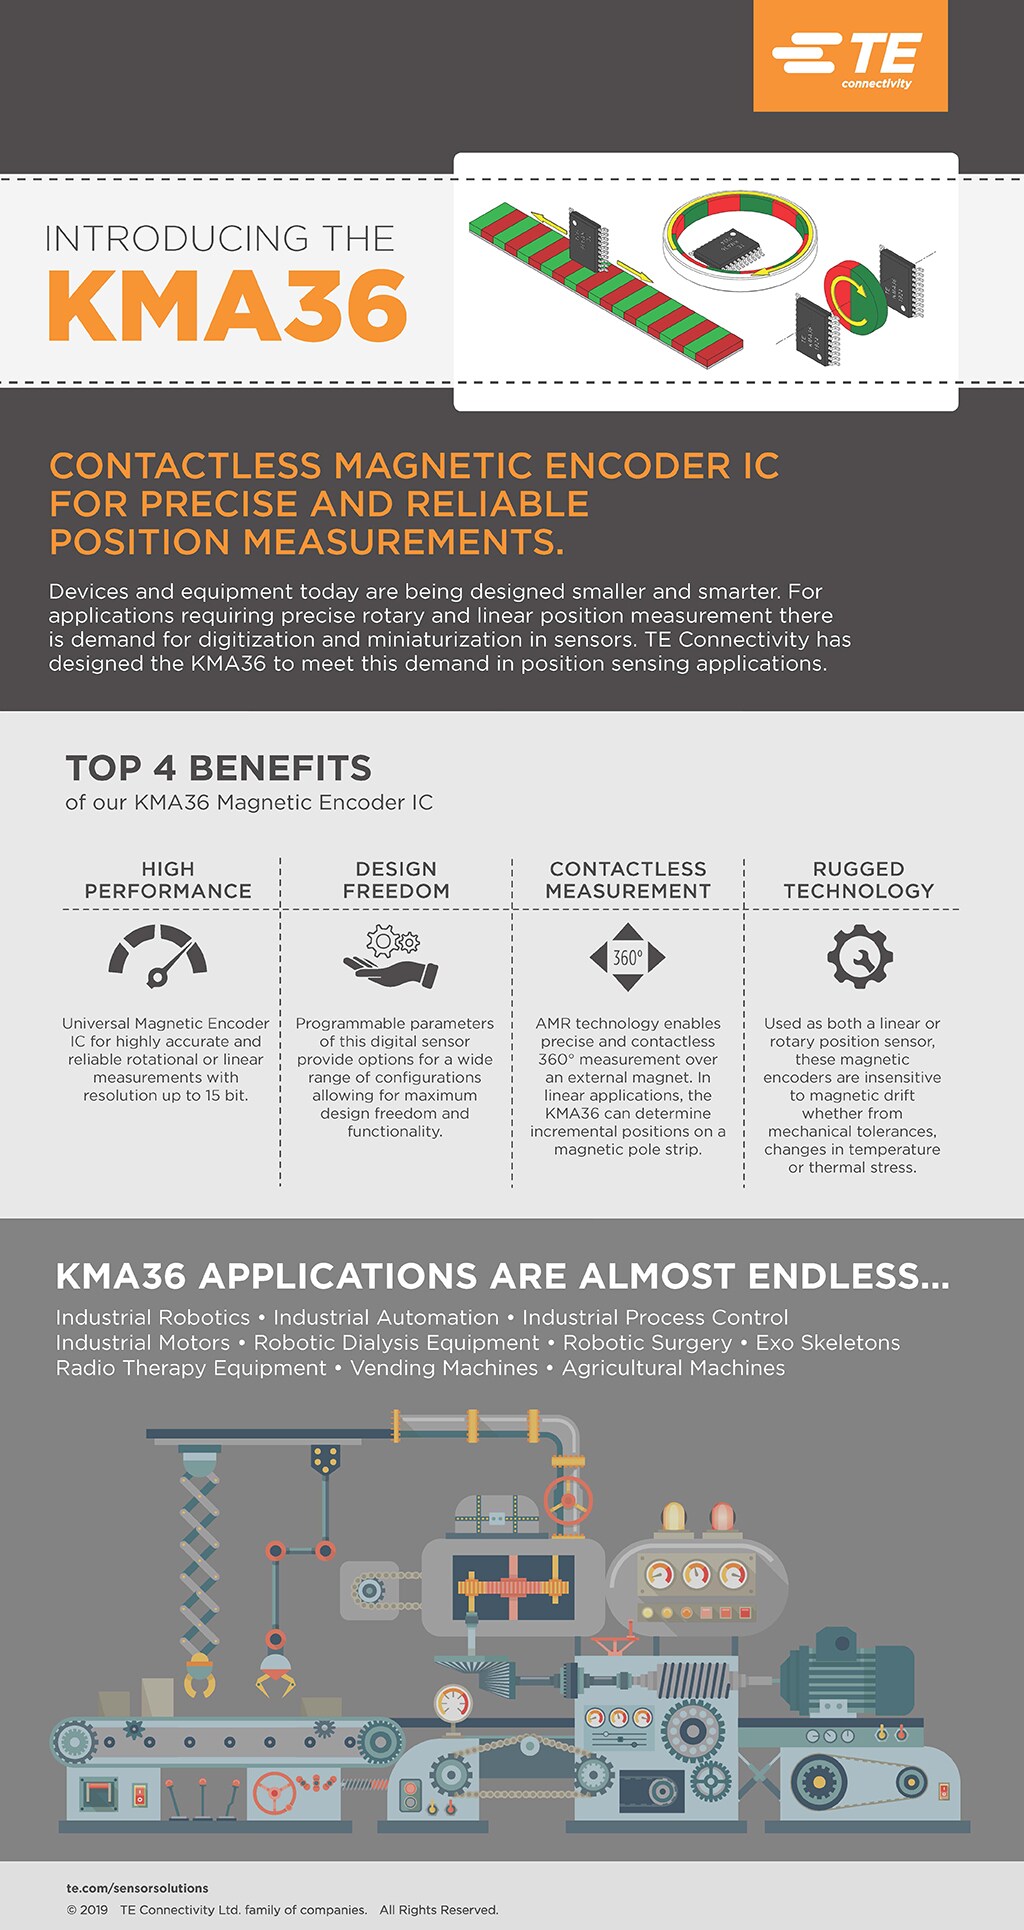 kma36-infographic